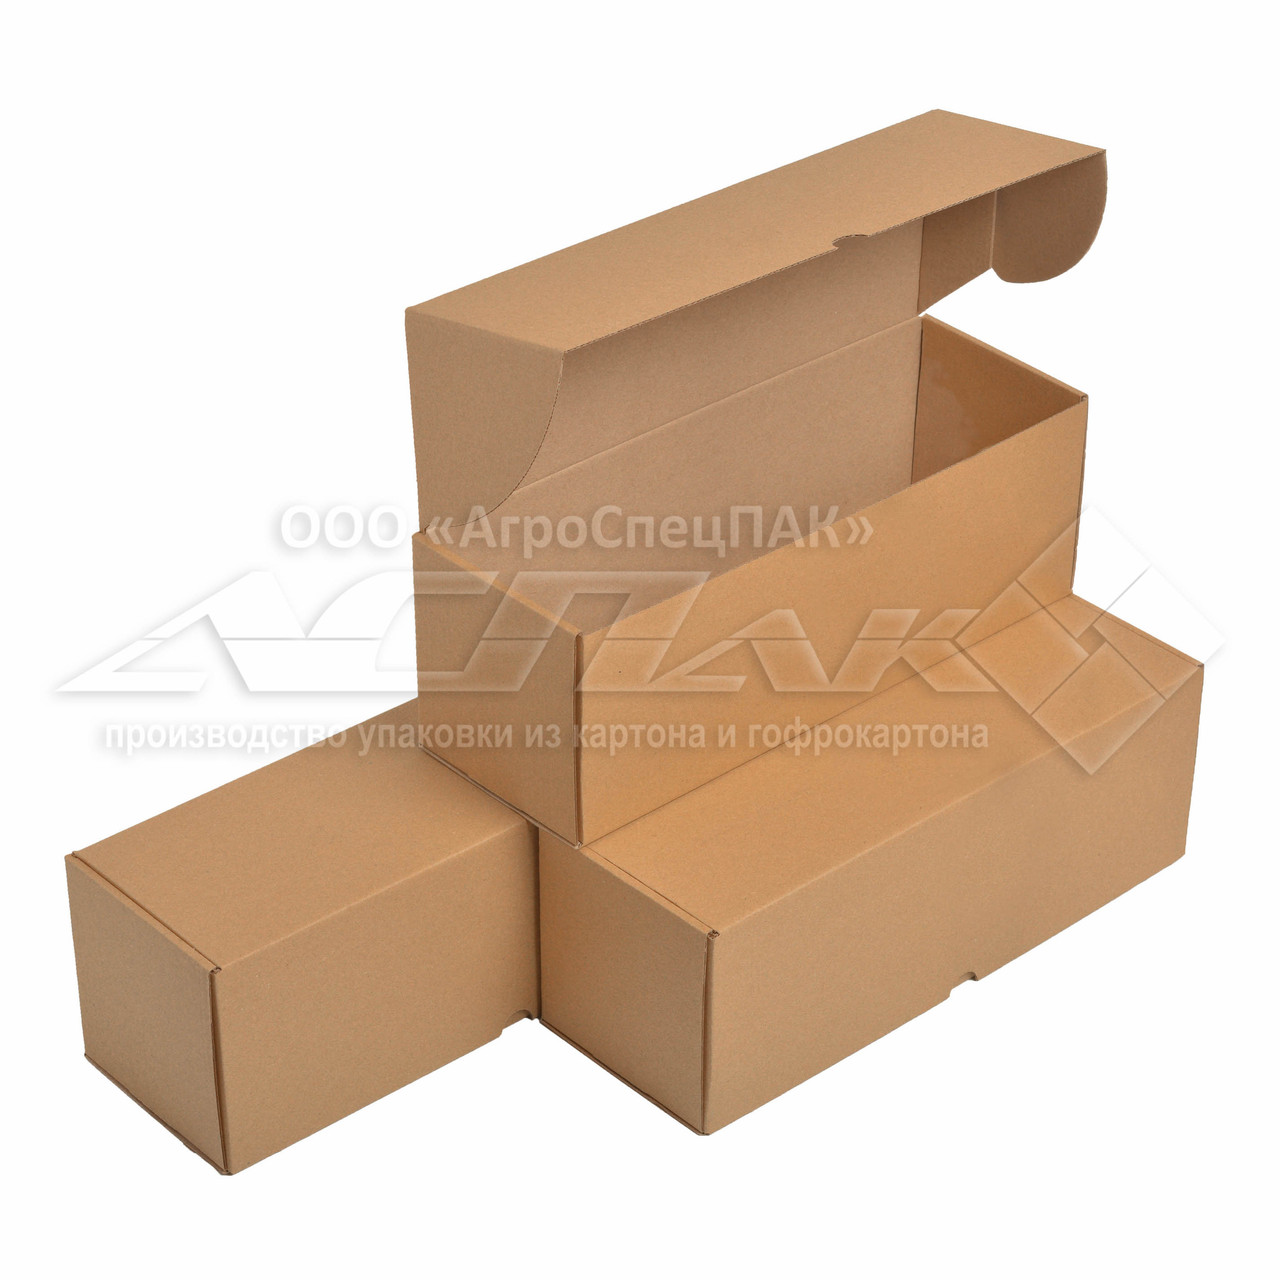 Самозбірні коробки 350x120x120 бурі. Крафтовые коробки., фото 1